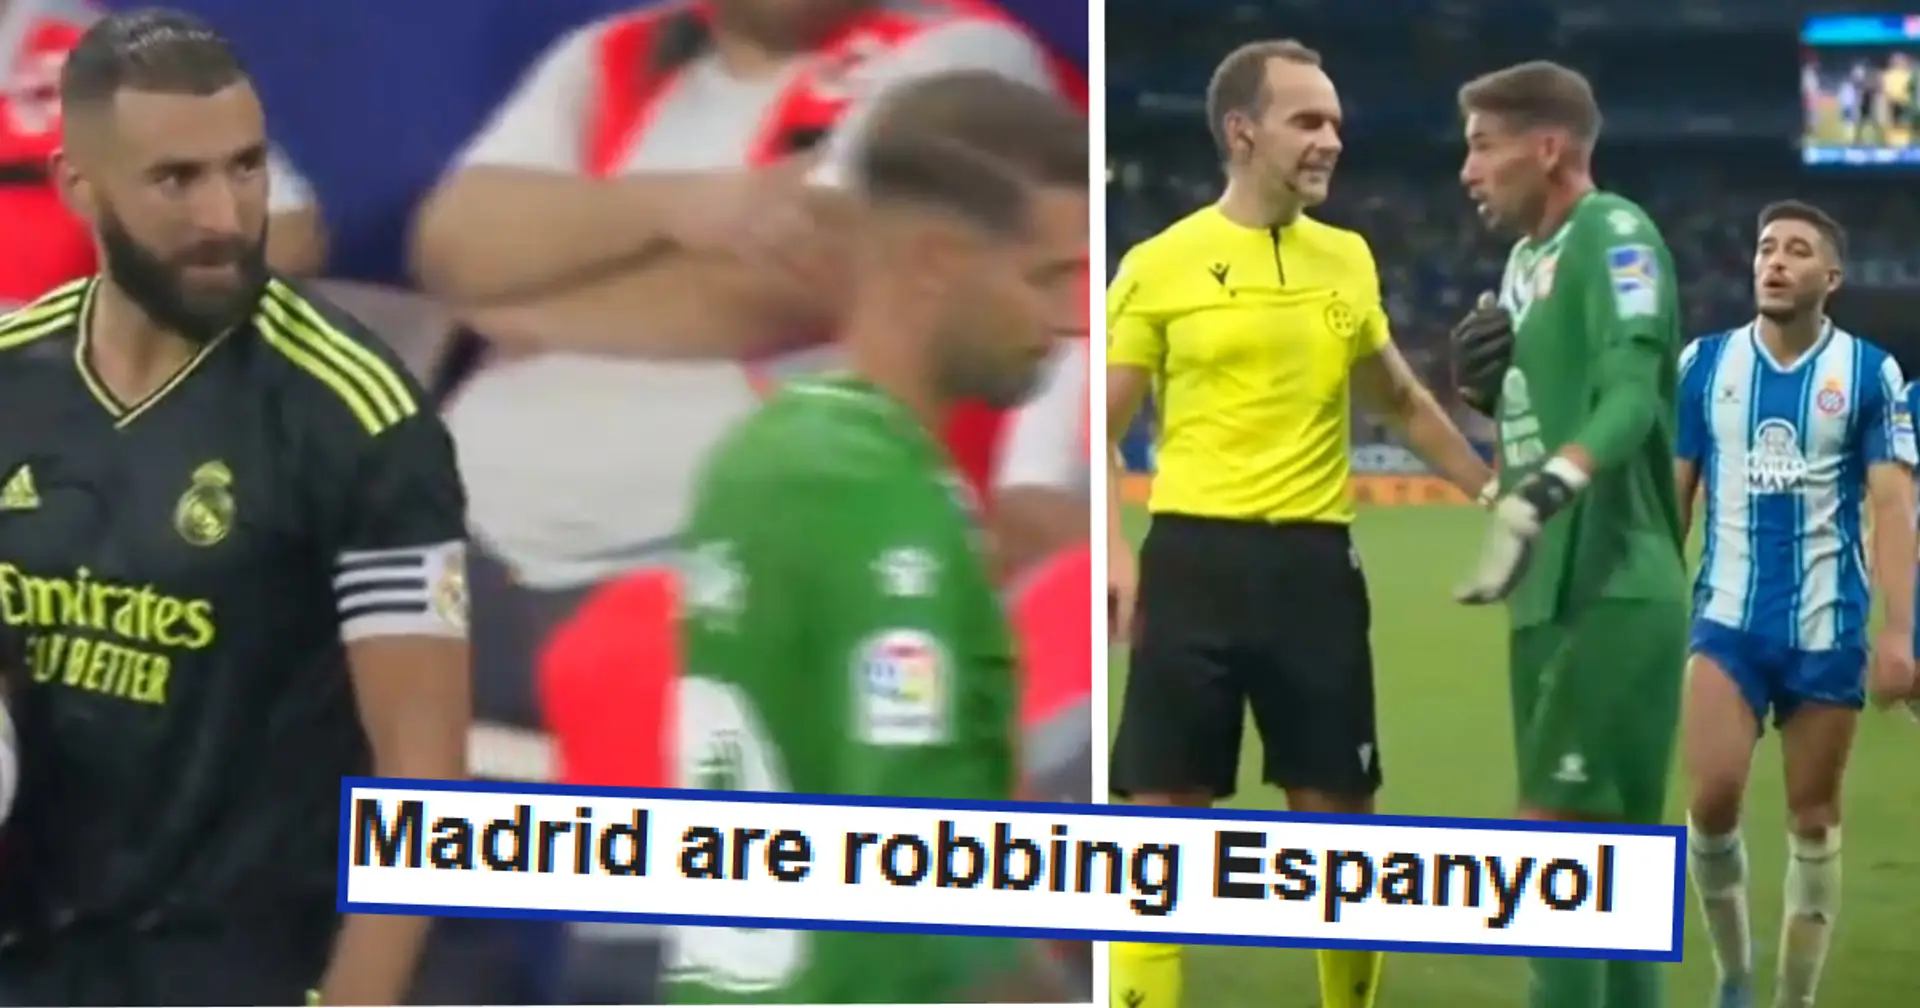 "VARdrid en effet": le gardien de l'Espanyol expulsé de manière controversée contre le Real Madrid à la 96e minute